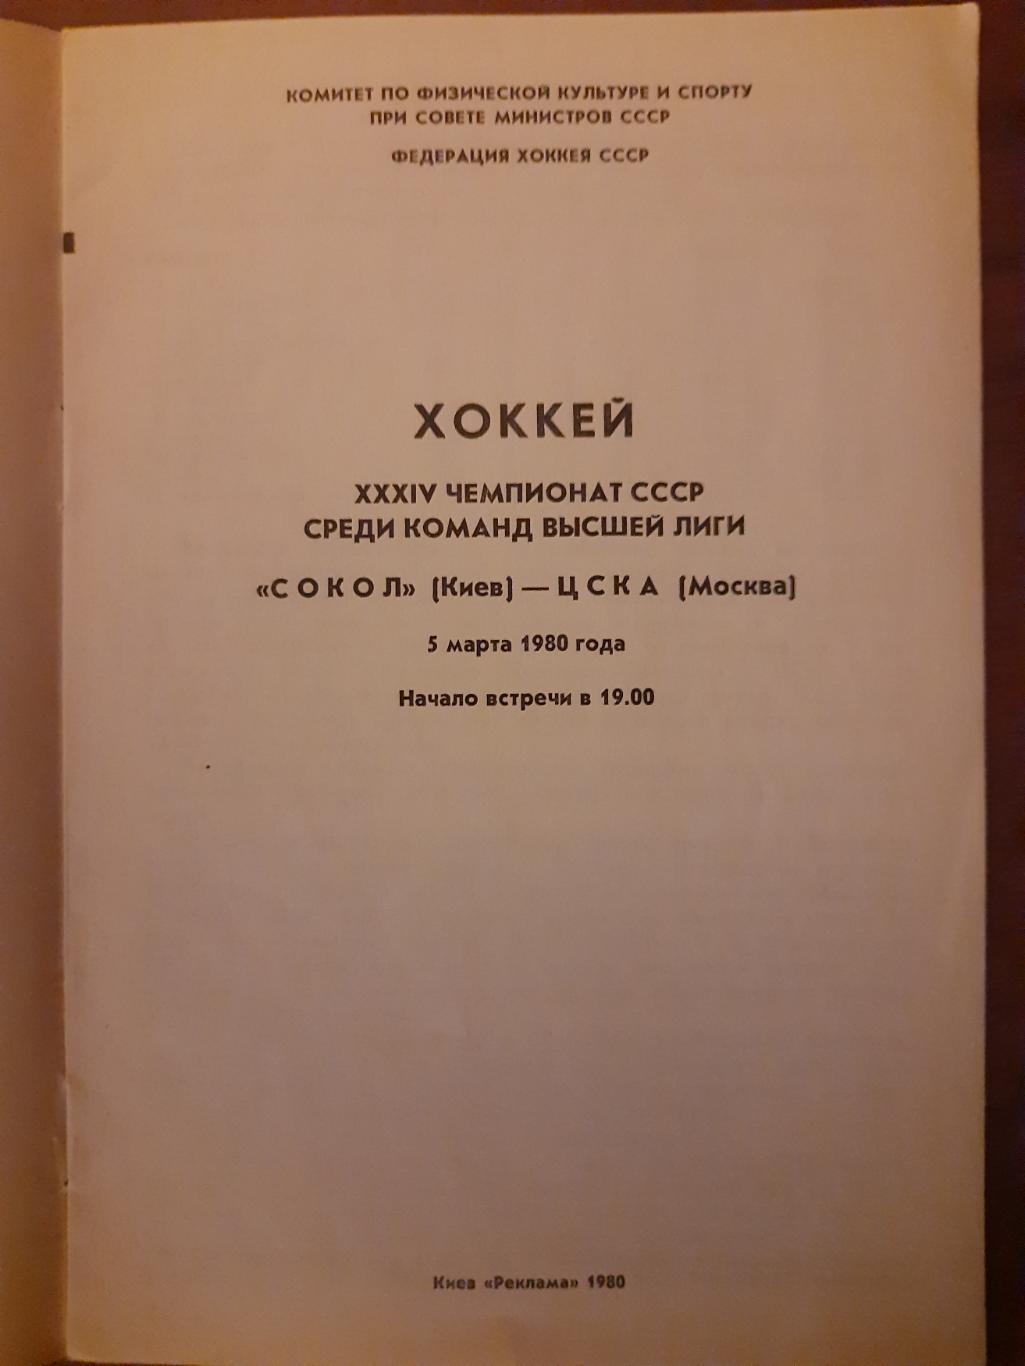 Сокол Киев - ЦСКА Москва 5.03.1980 1